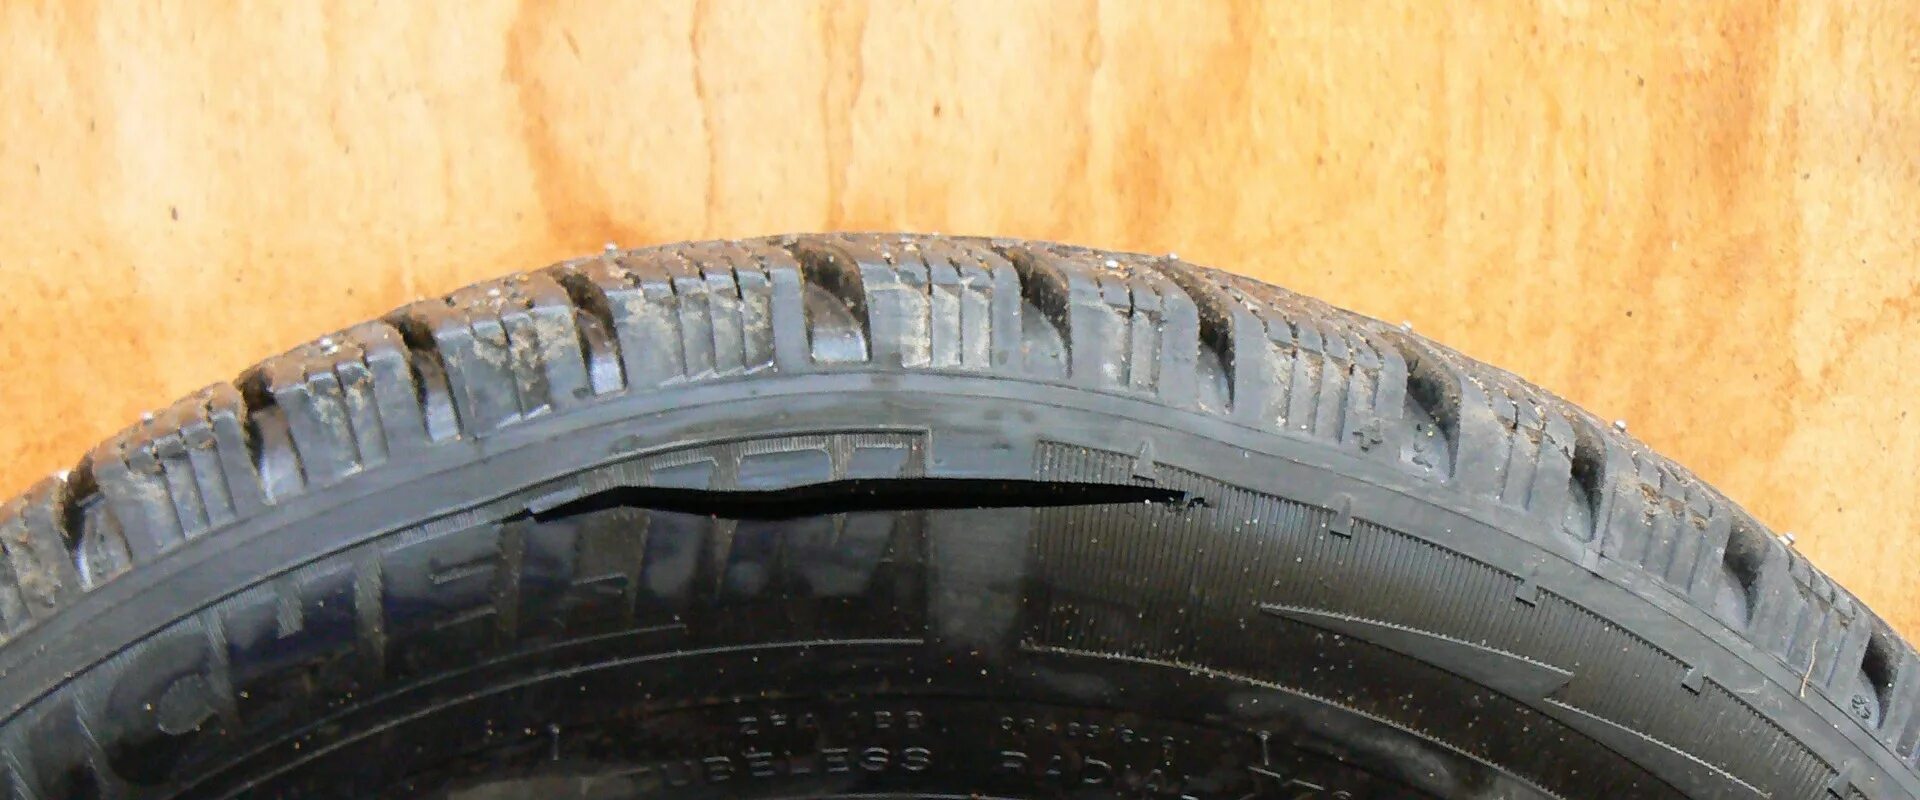 Отслоение протектора на шине. Боковой порез шины Мишлен. Резина вид-203 сбоку. Резина Michelin с порезом.